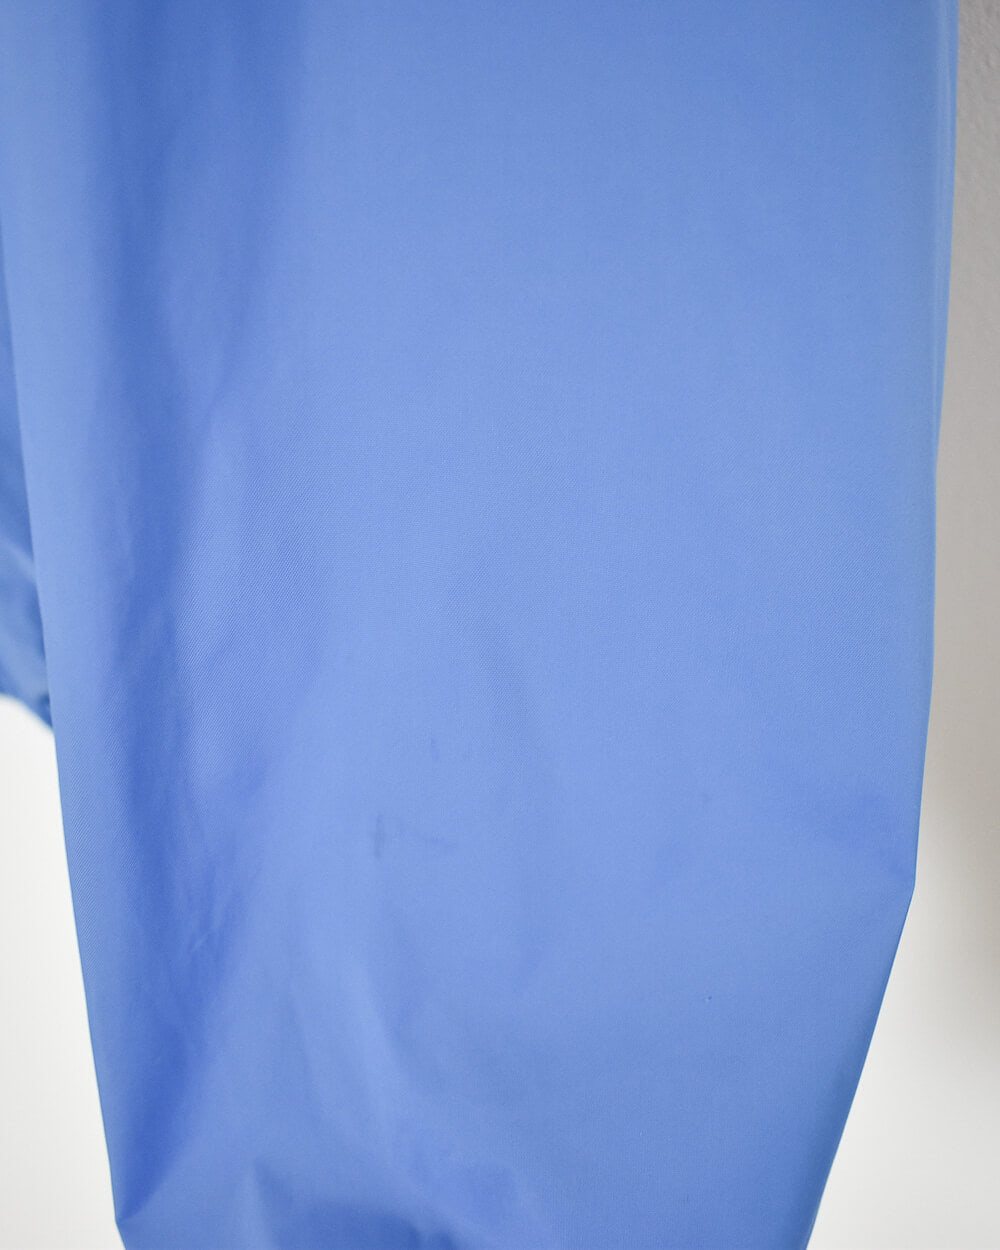 Blue Fila Hooded Windbreaker Jacket - Small